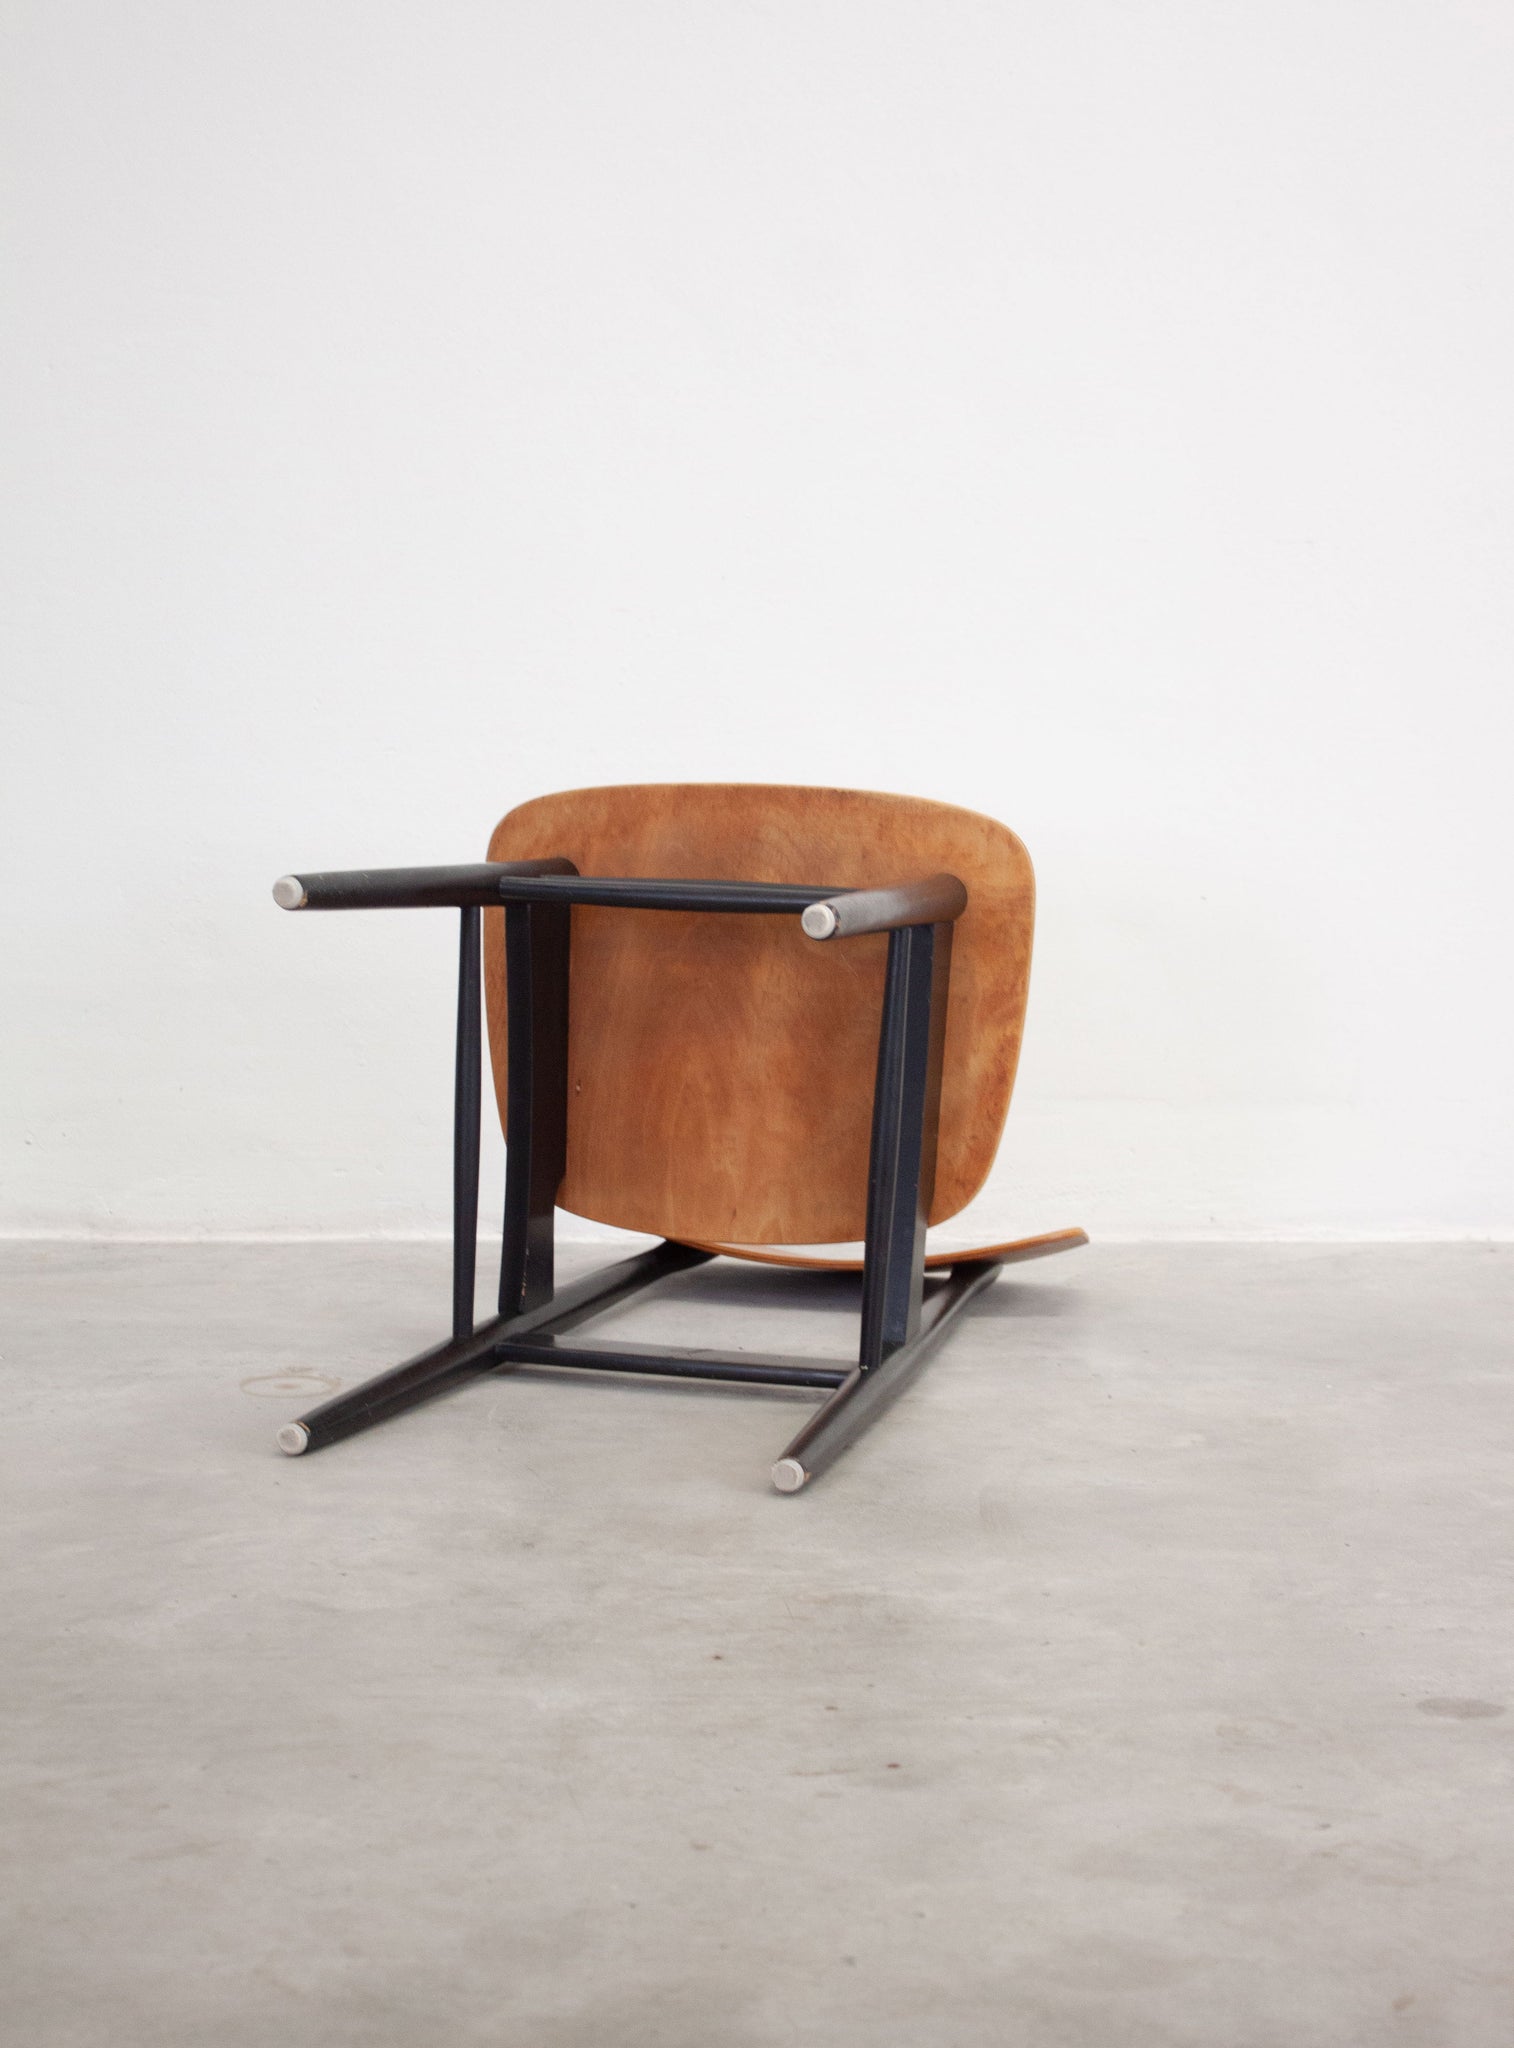 Pastoe Dining Chairs by Cees Braakman (Teak)